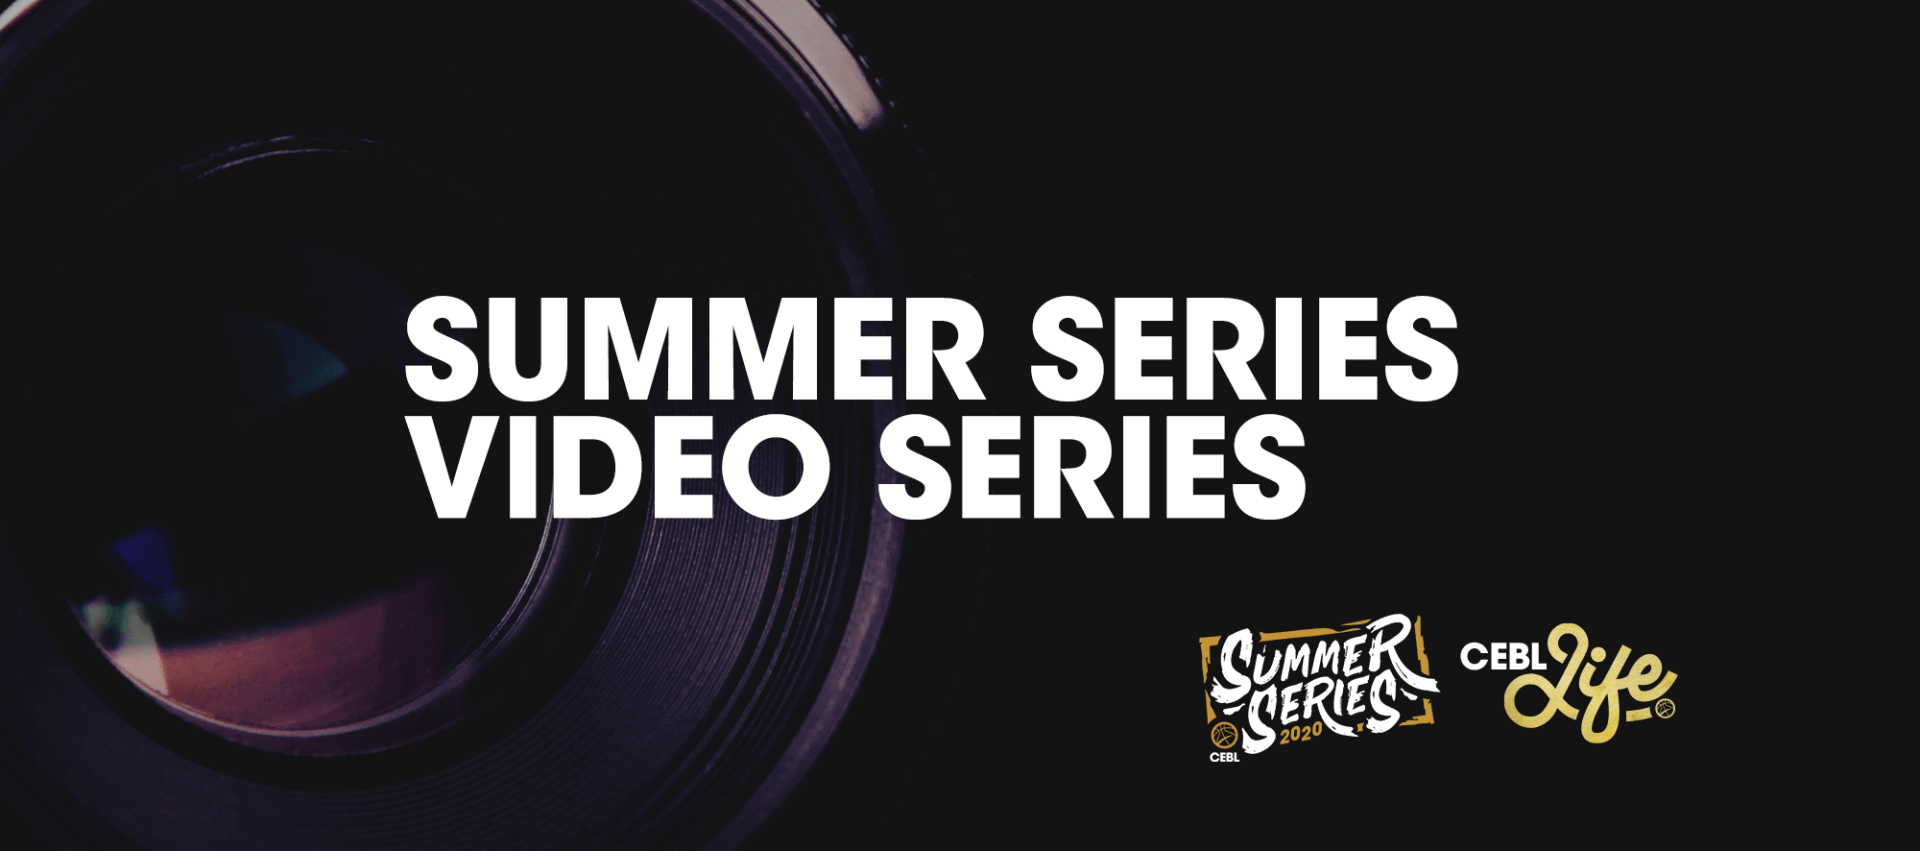 Summer Series Video Series